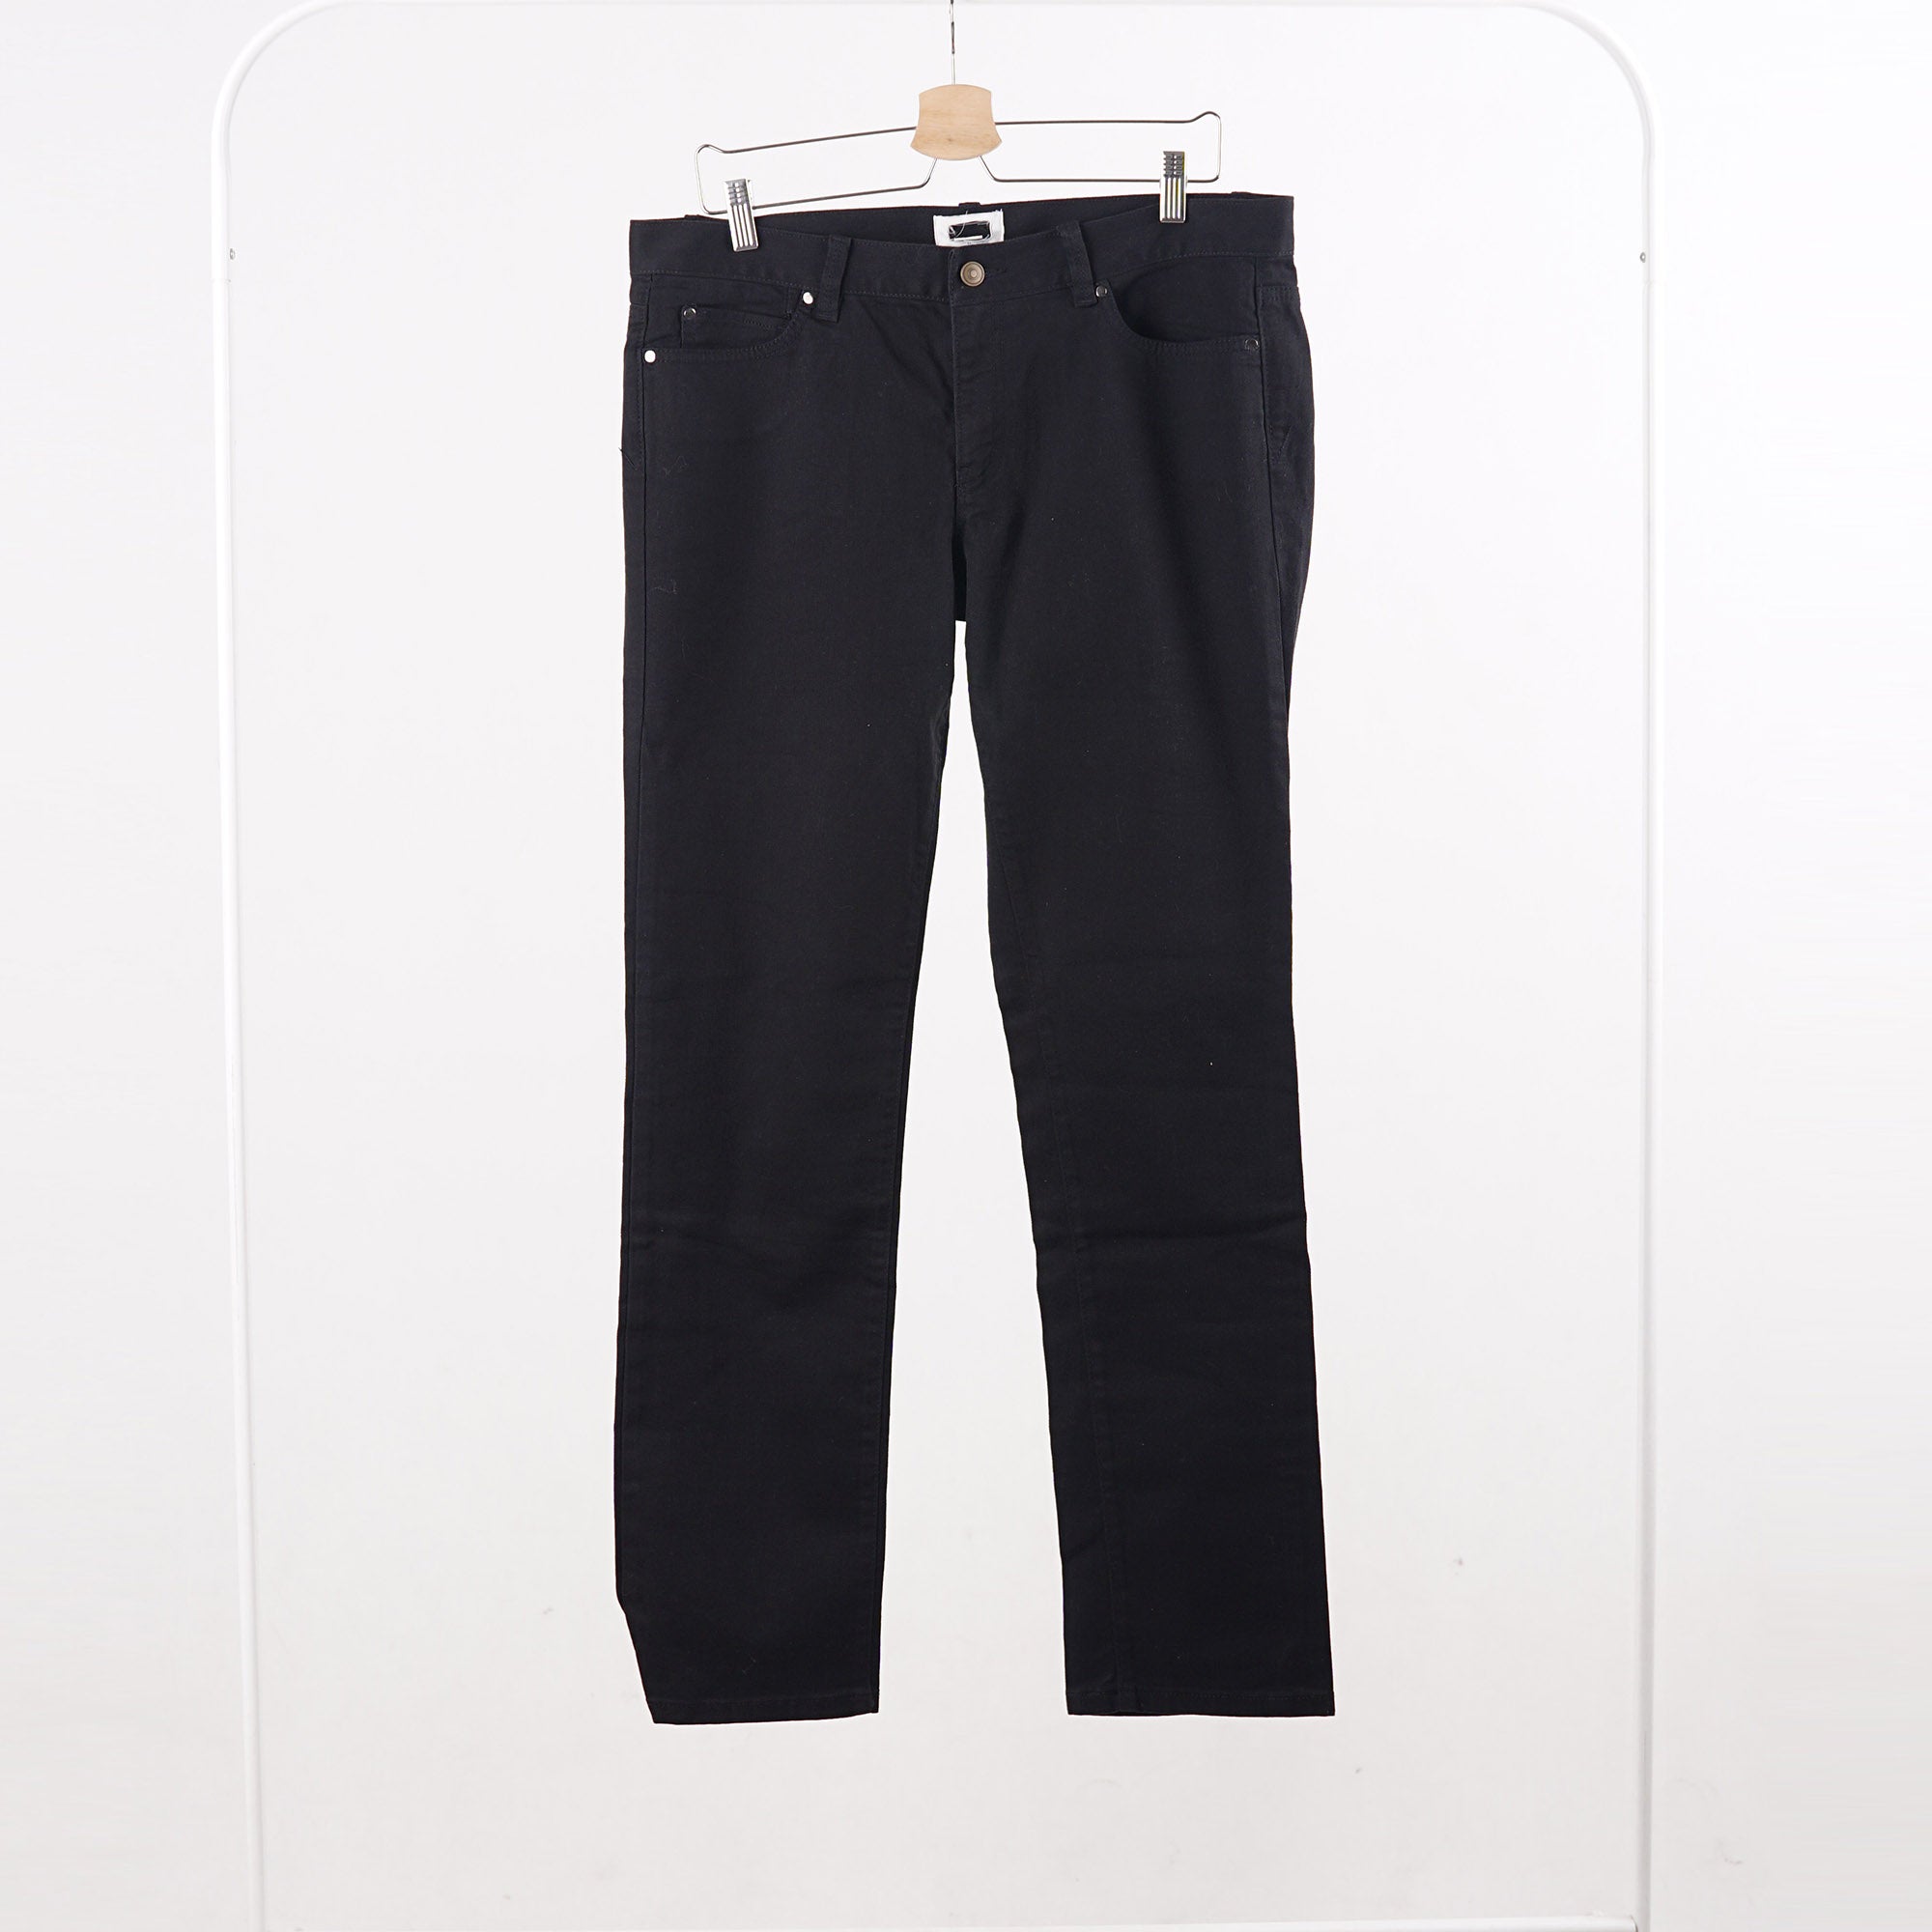 Celana Jeans Wanita - Black Long Women Jeans Pants (MLL 47)